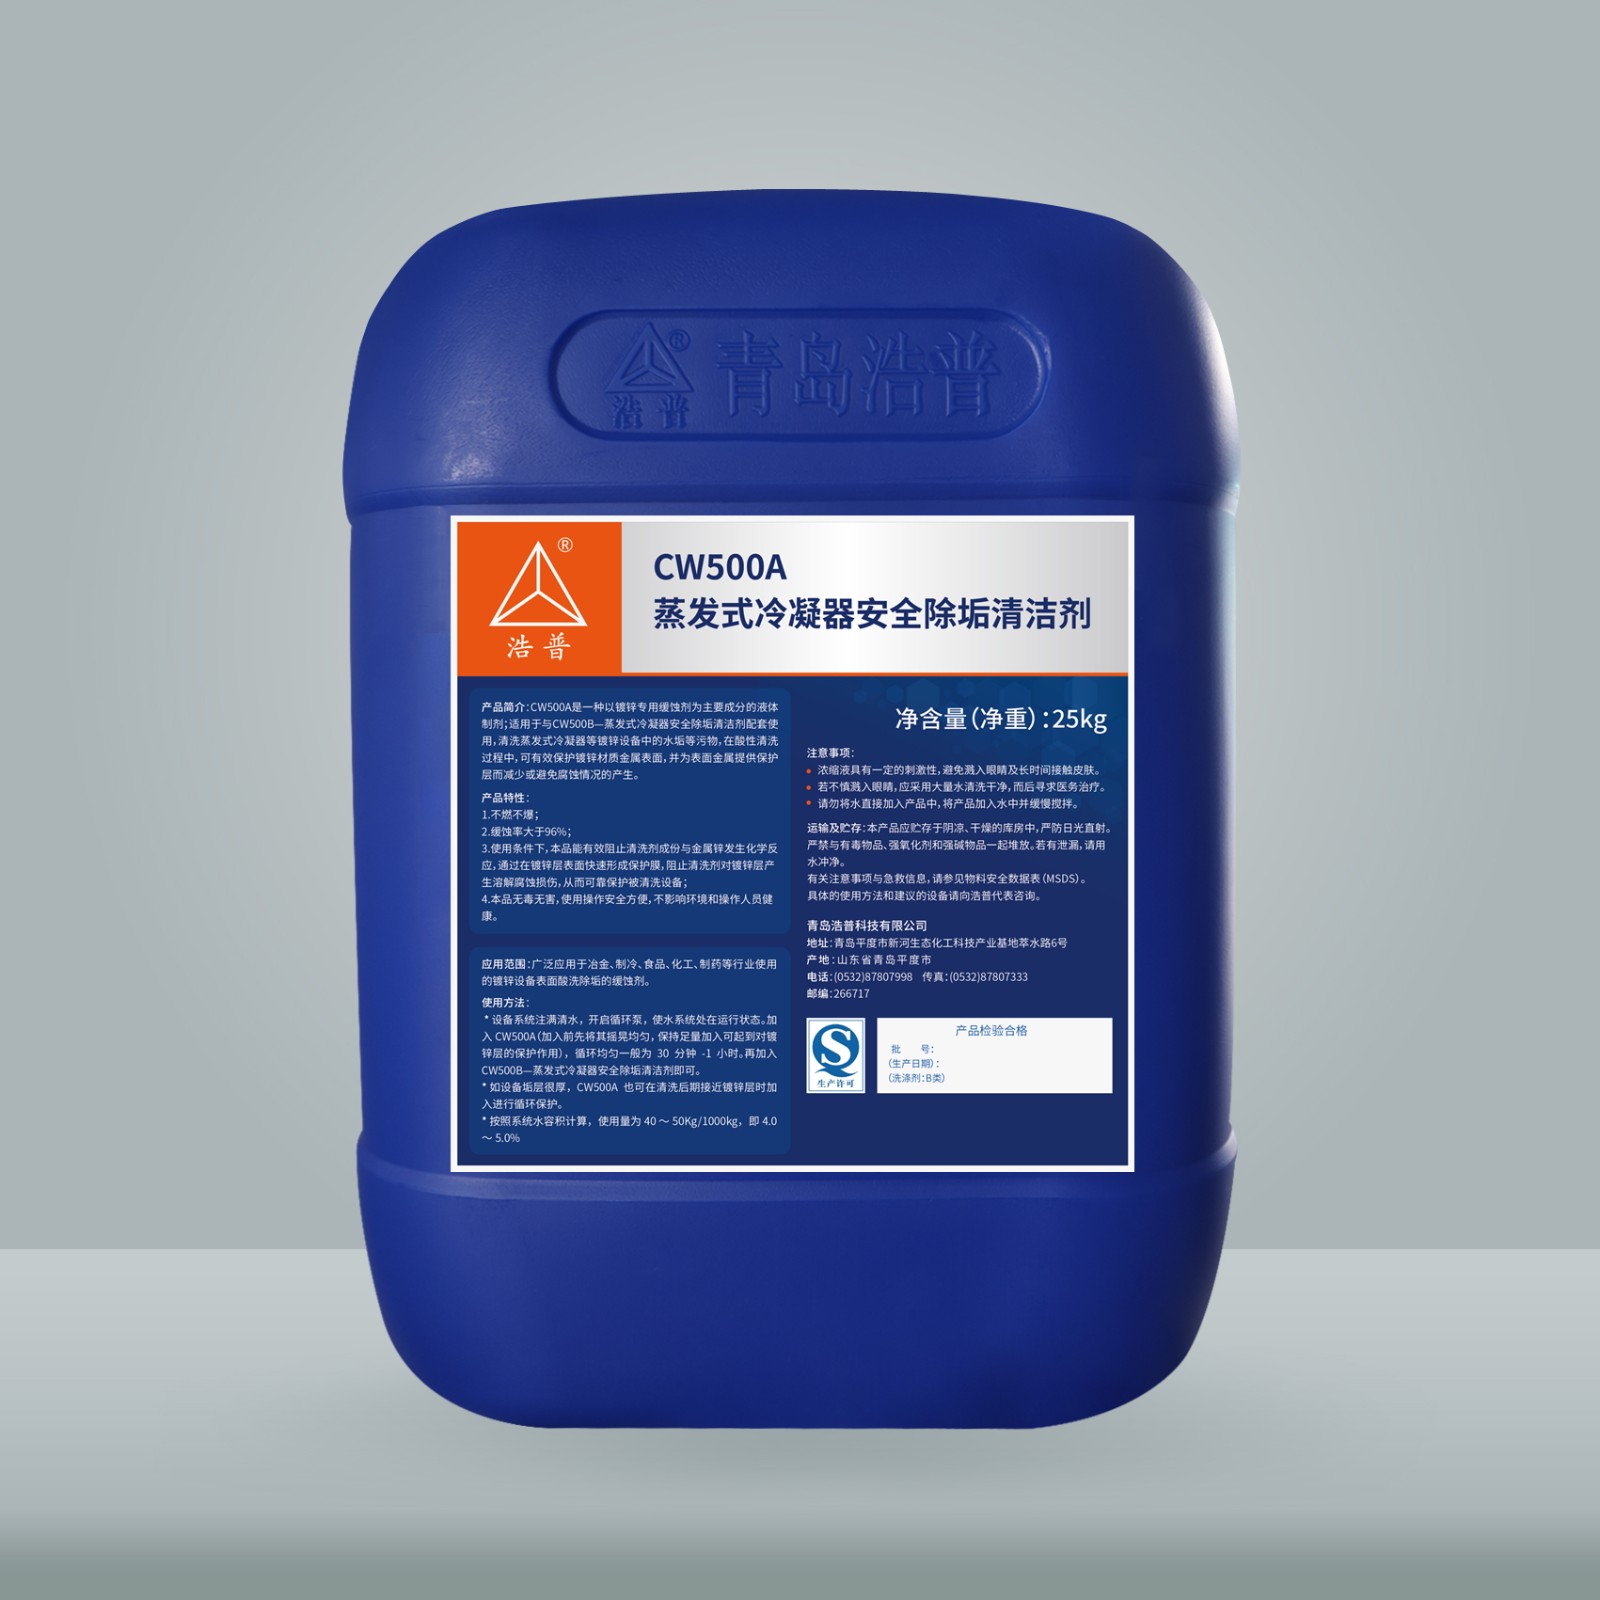 CW500A—蒸发式冷凝器安全除垢清洁剂